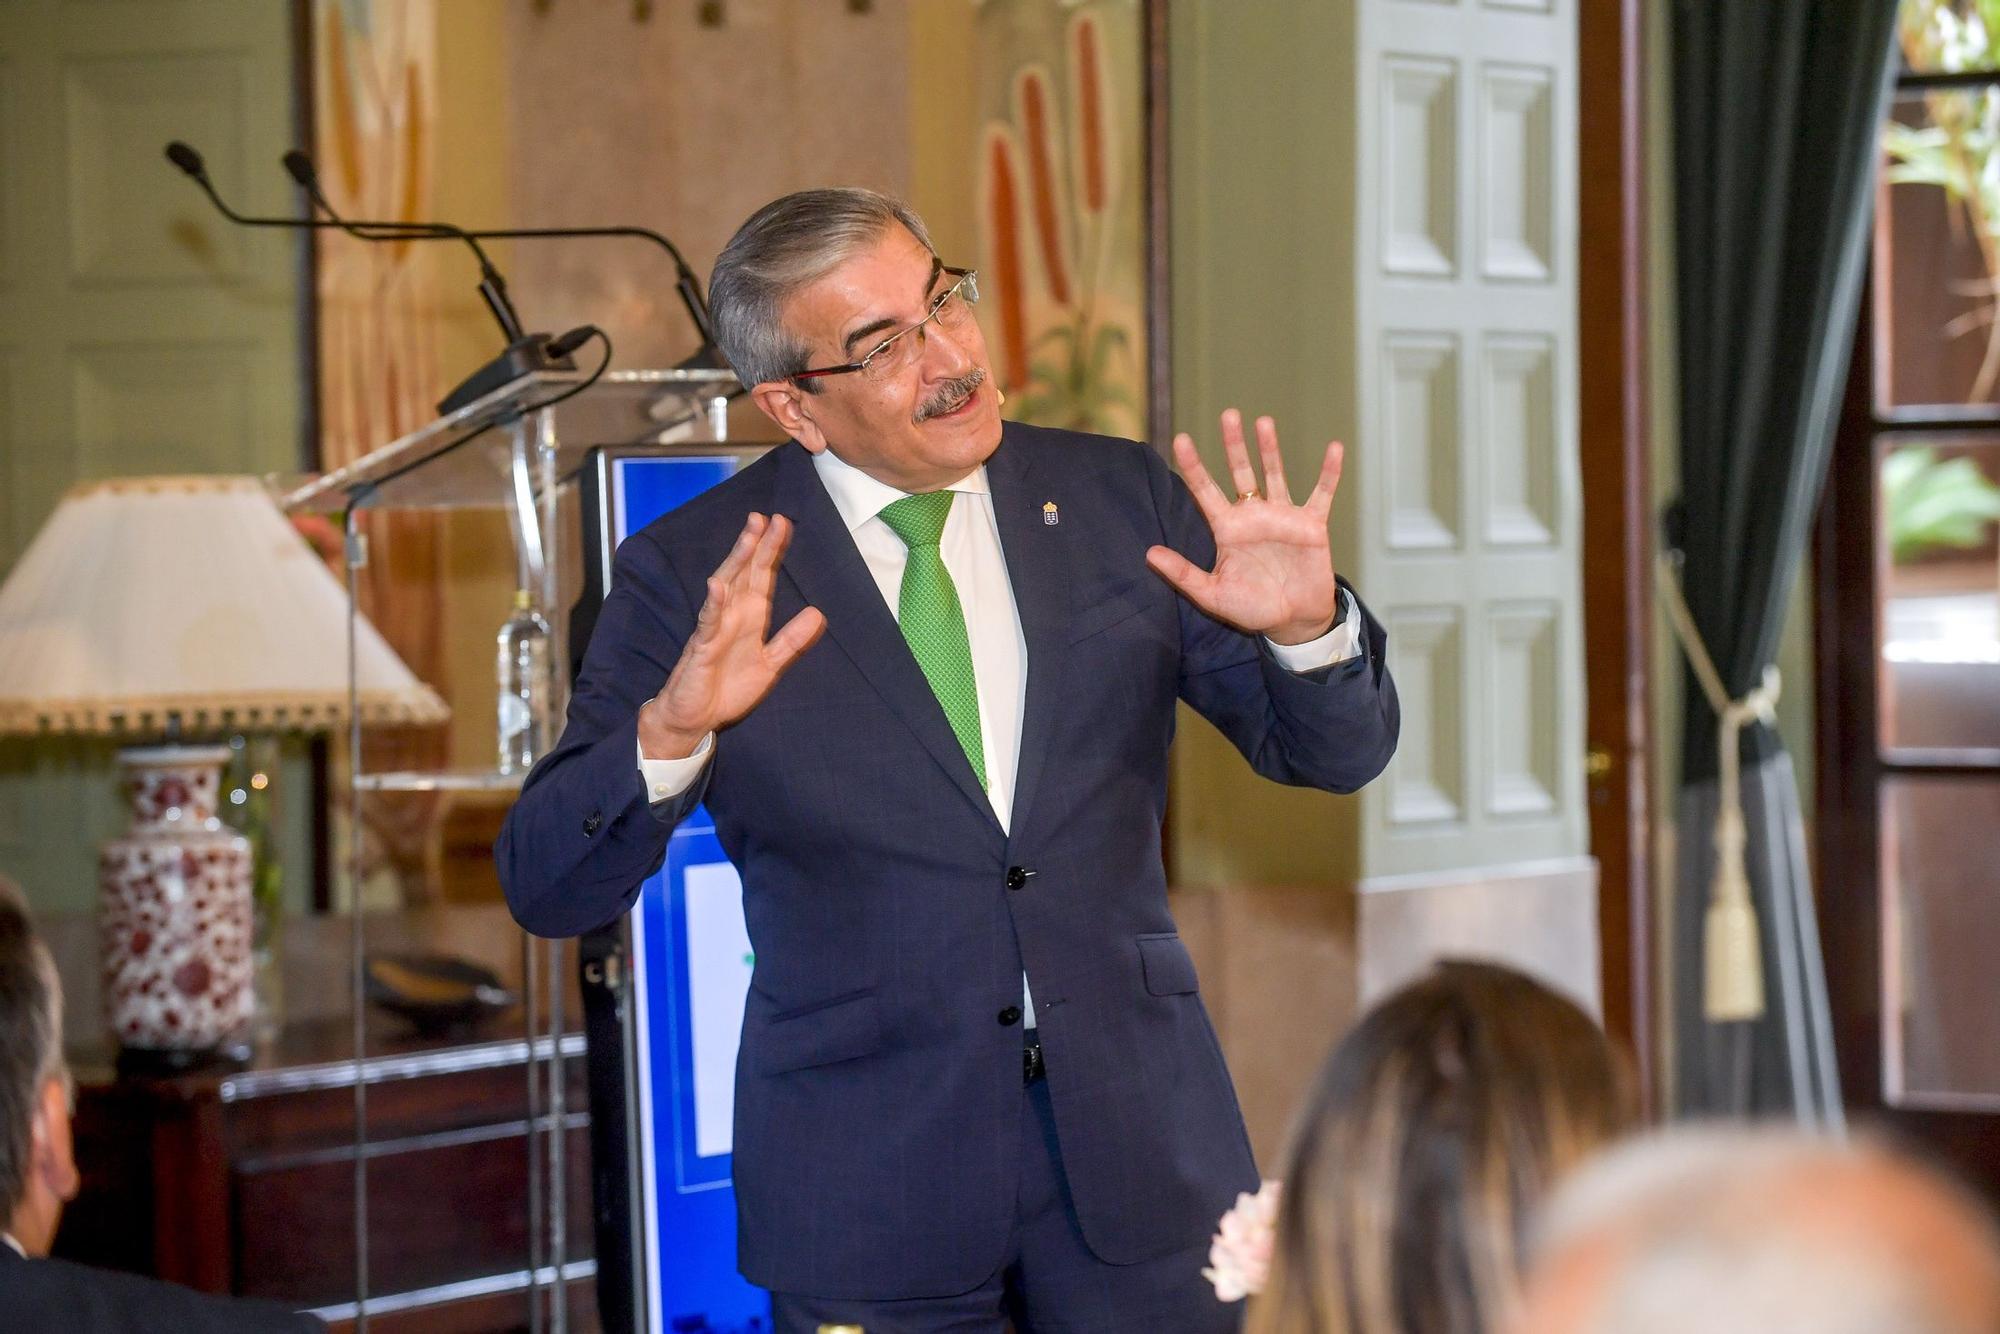 Román Rodríguez interviene en el Foro de Prensa Ibérica con la conferencia 'Capaces de un futuro mejor'